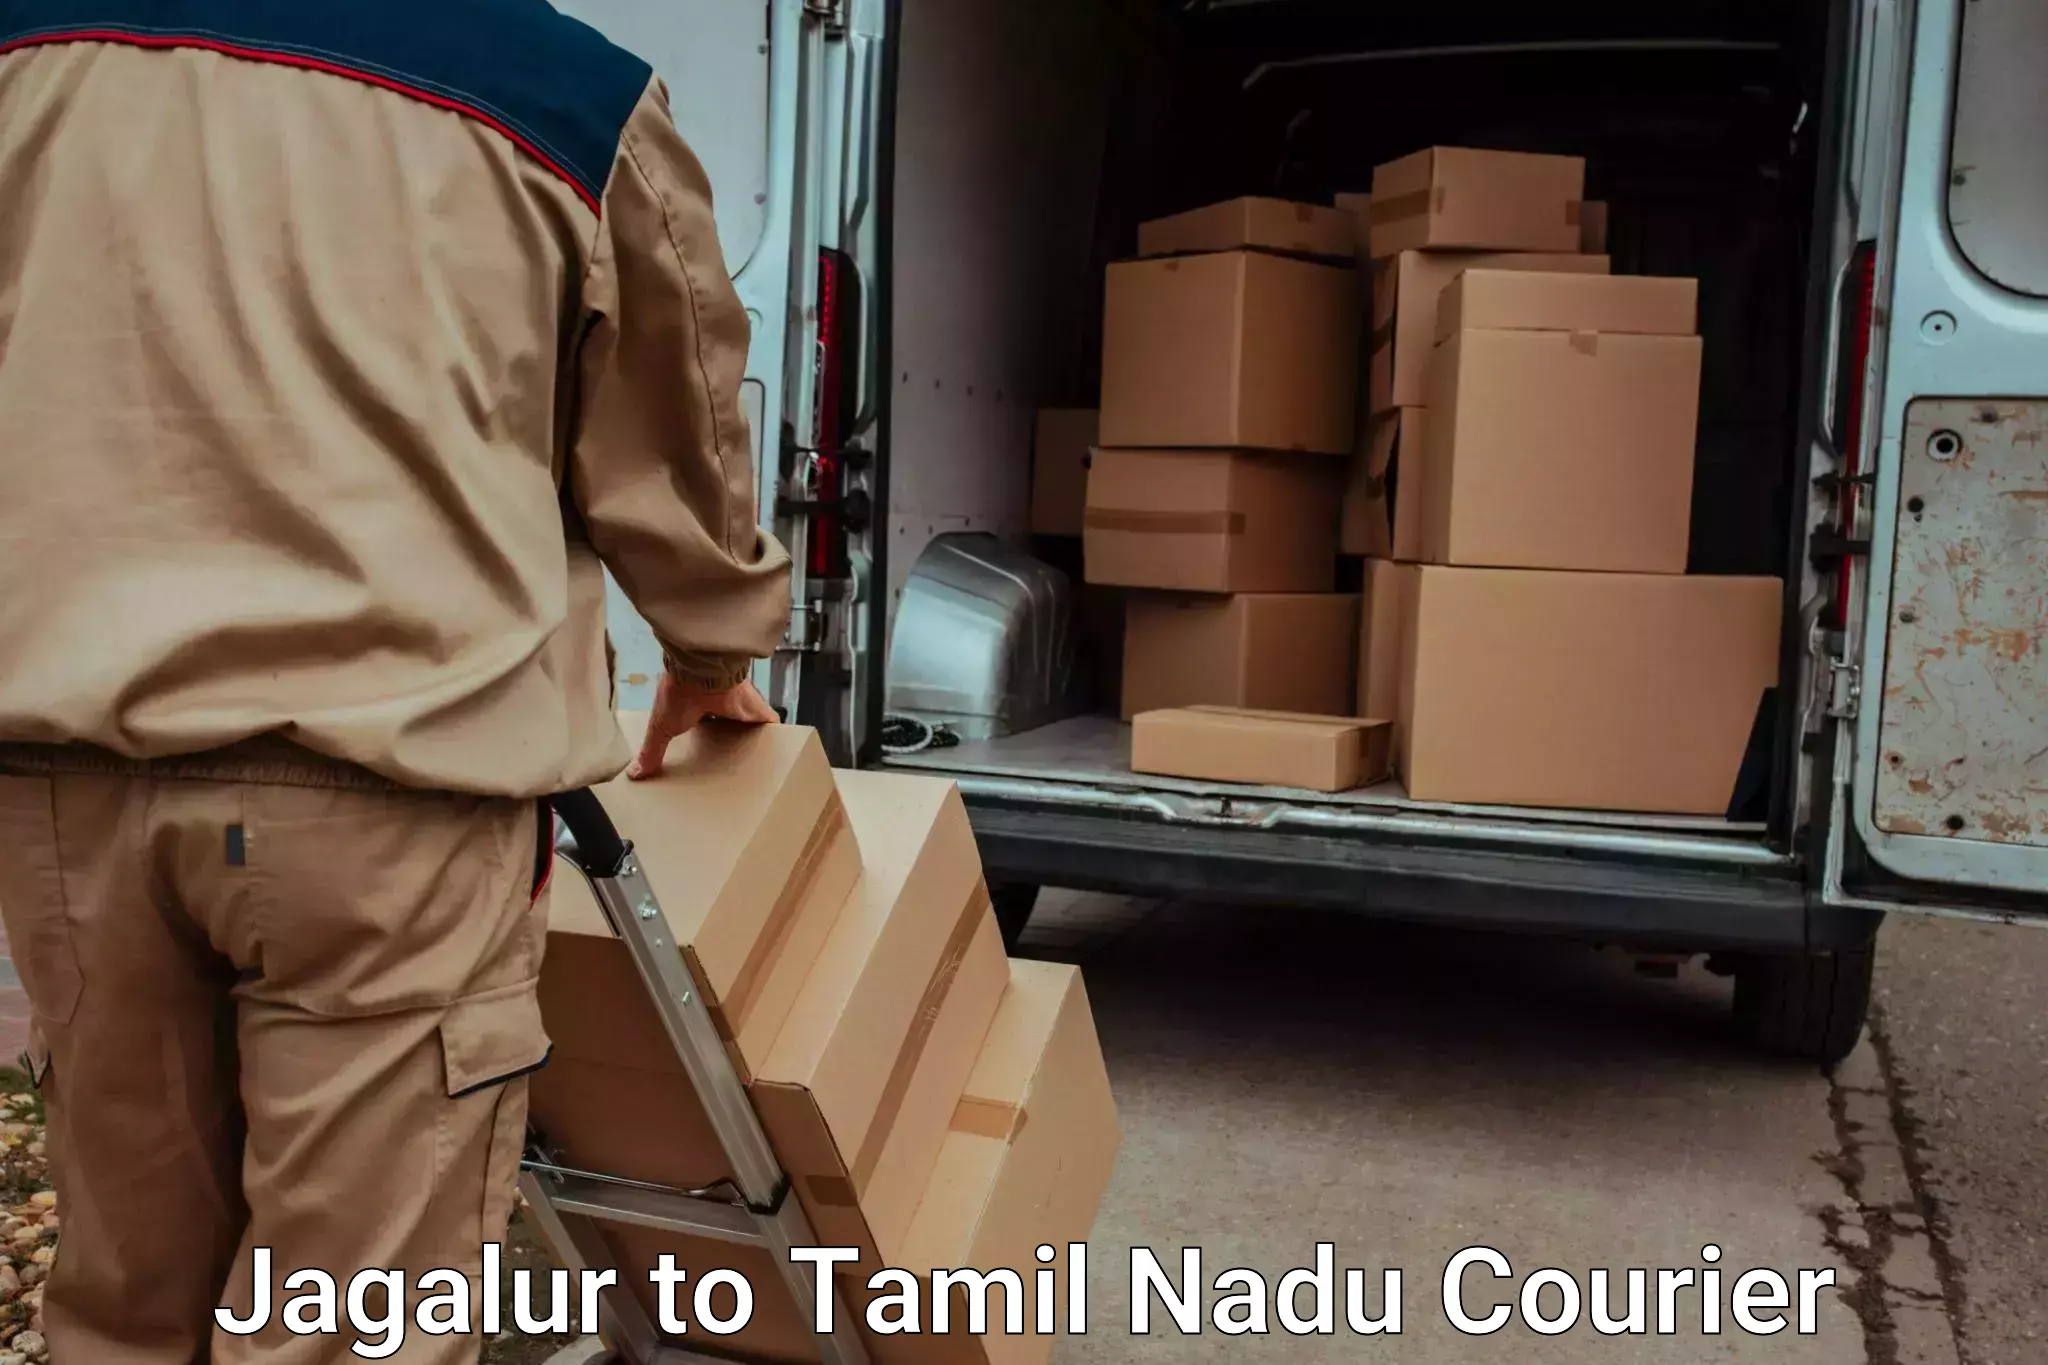 Personalized luggage shipping Jagalur to Tiruturaipundi